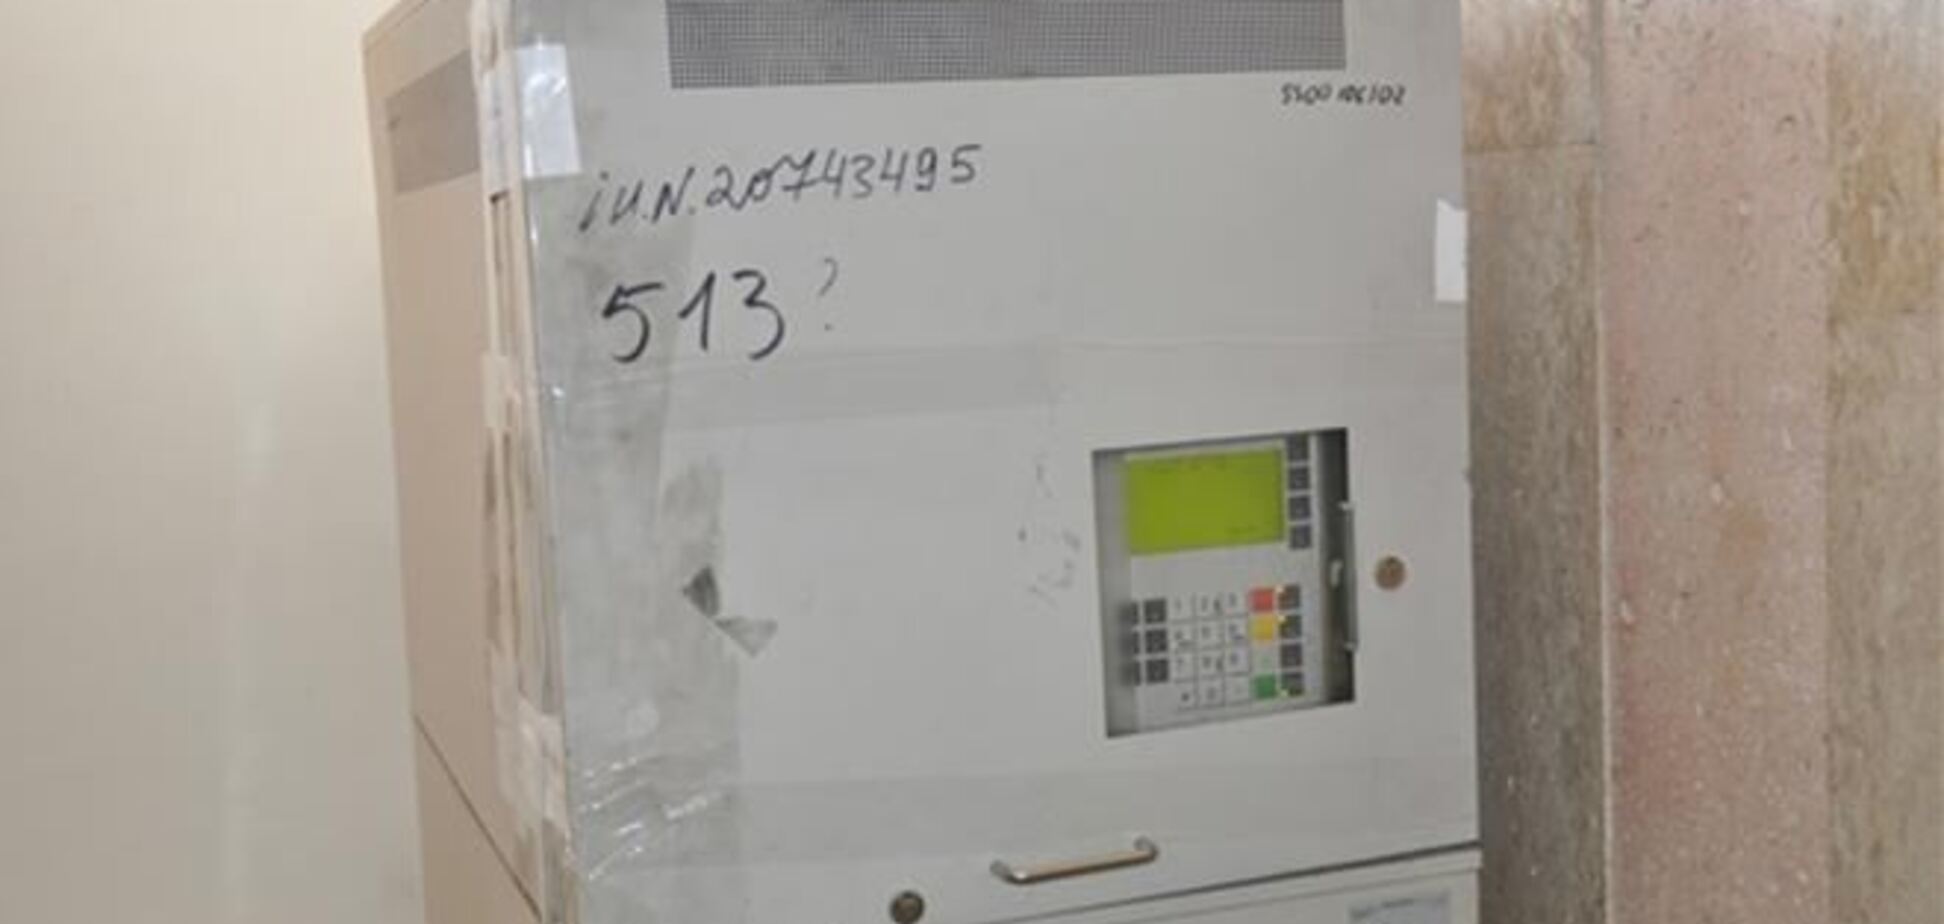 На Тернольщіне грабіжники розкрили банкомат за допомогою лома і електрошокера